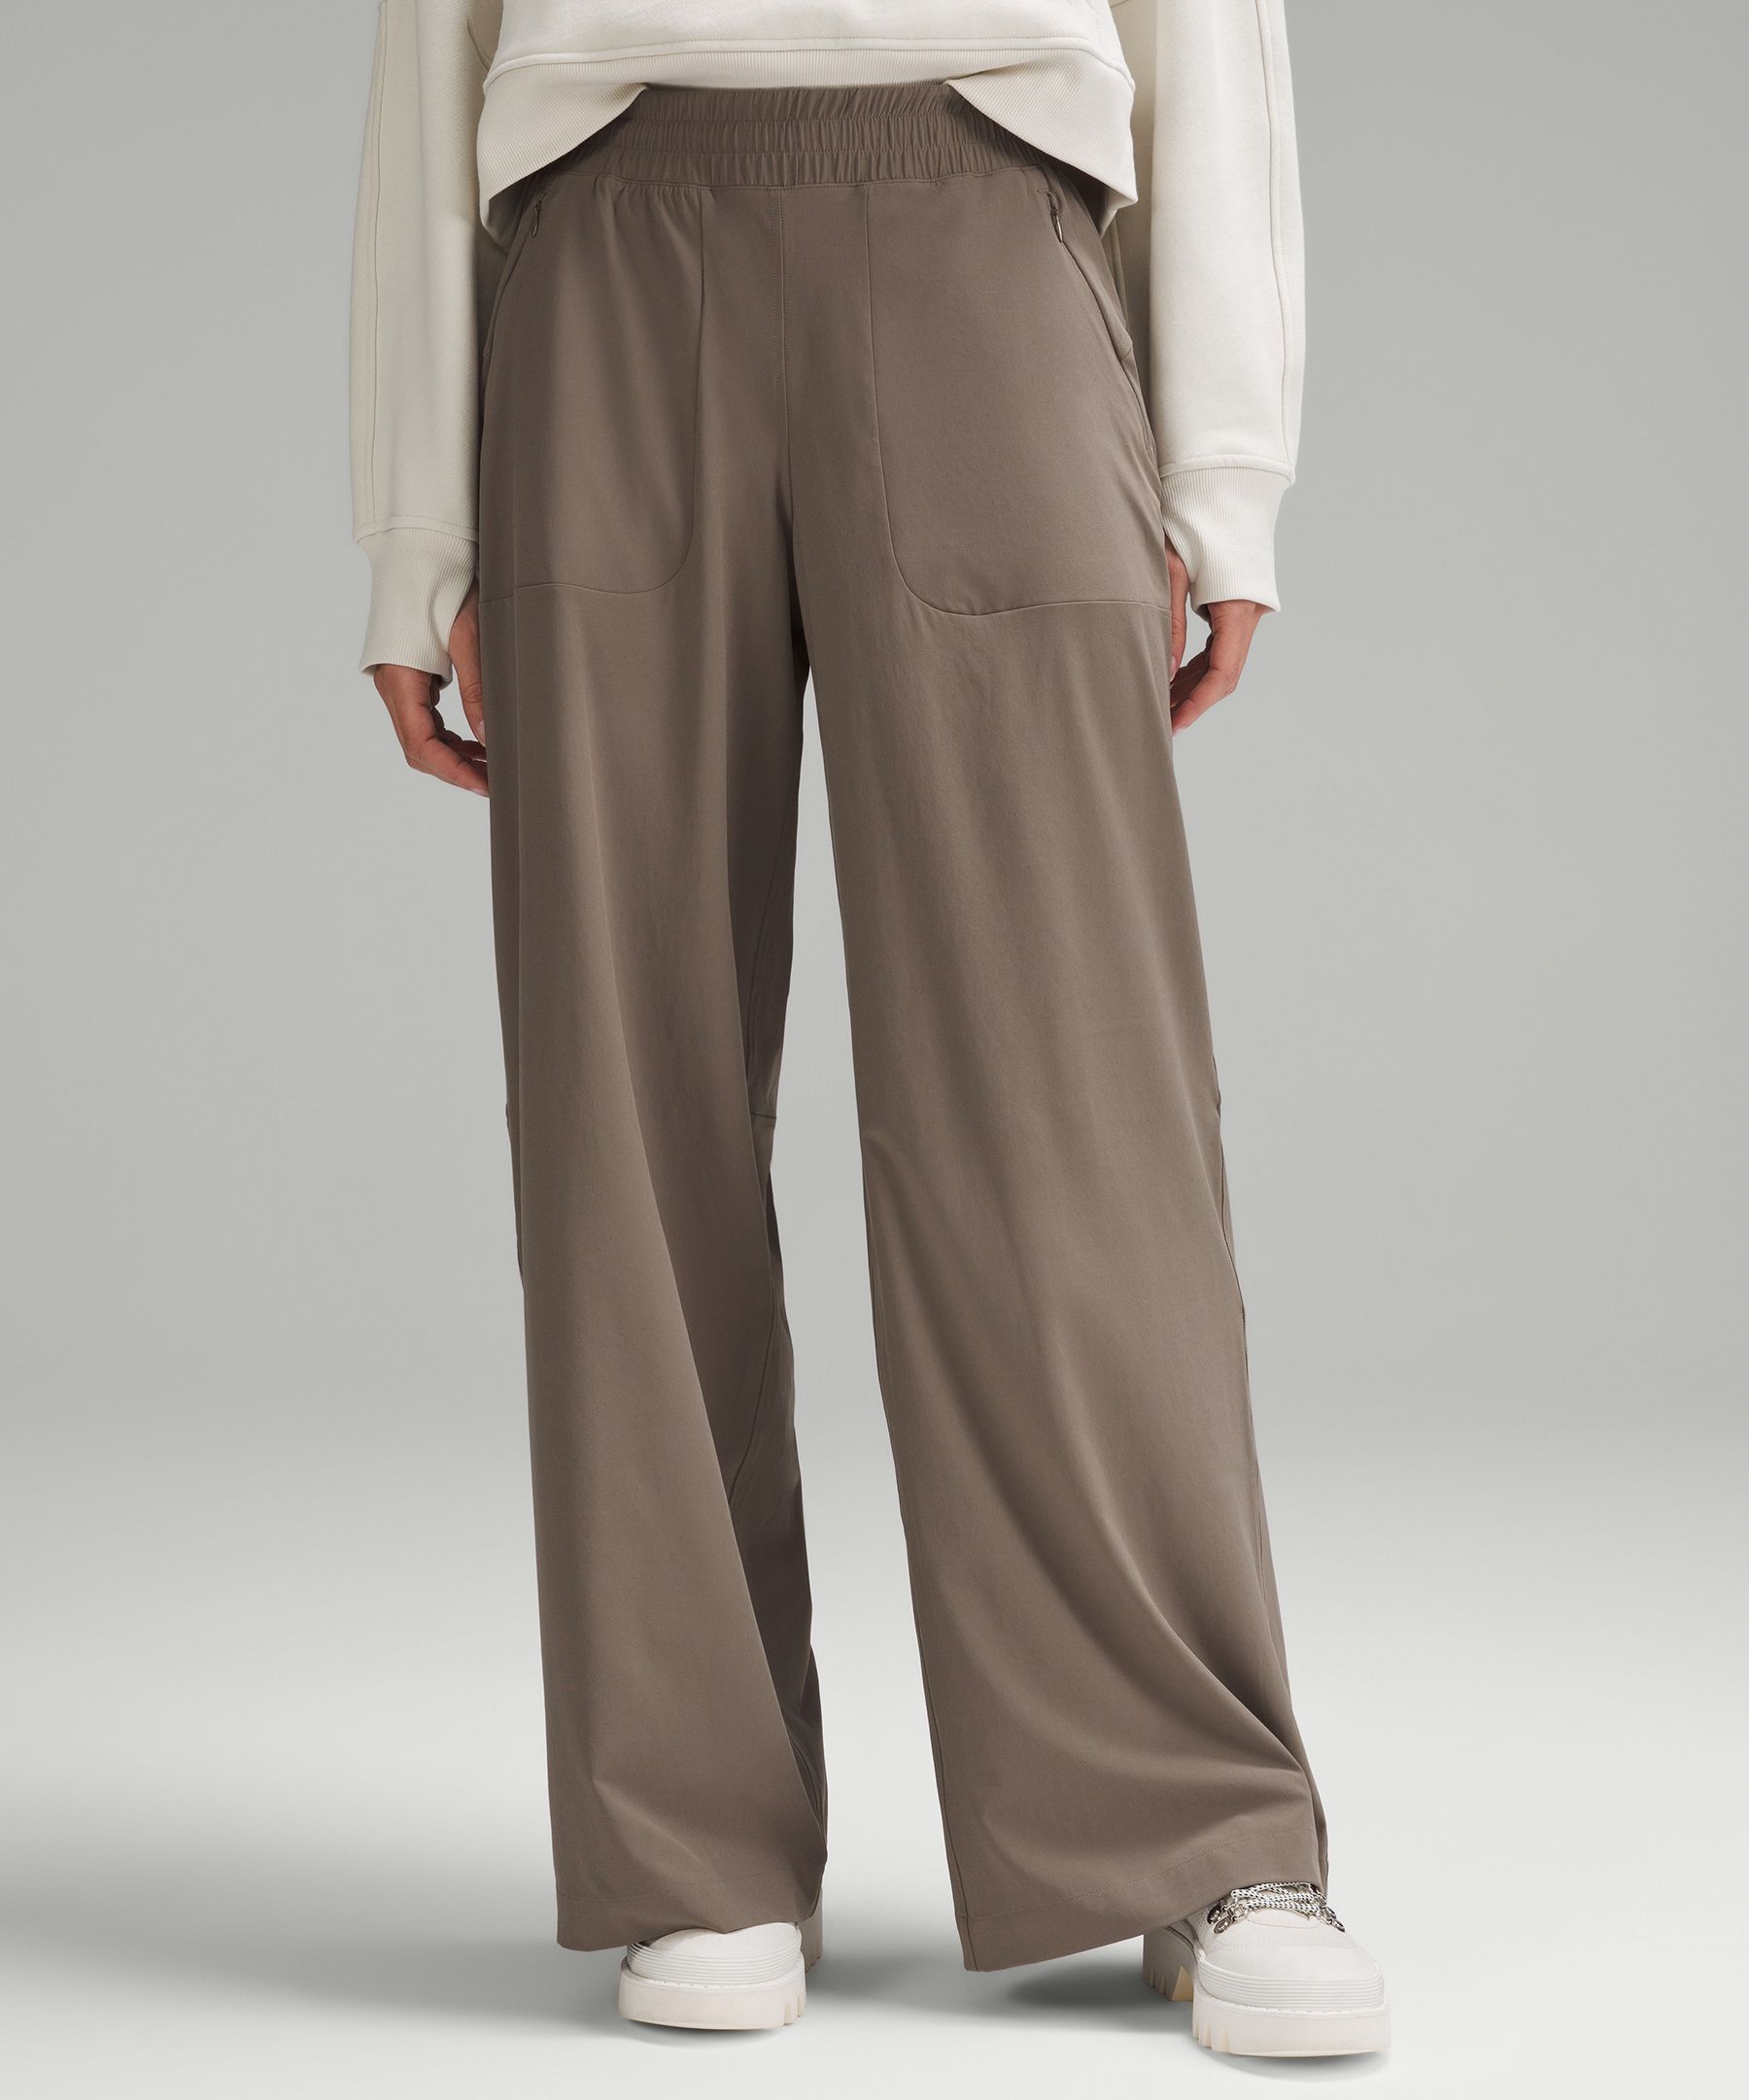 Lululemon Swift Mid-rise Wide-leg Pants Full Length